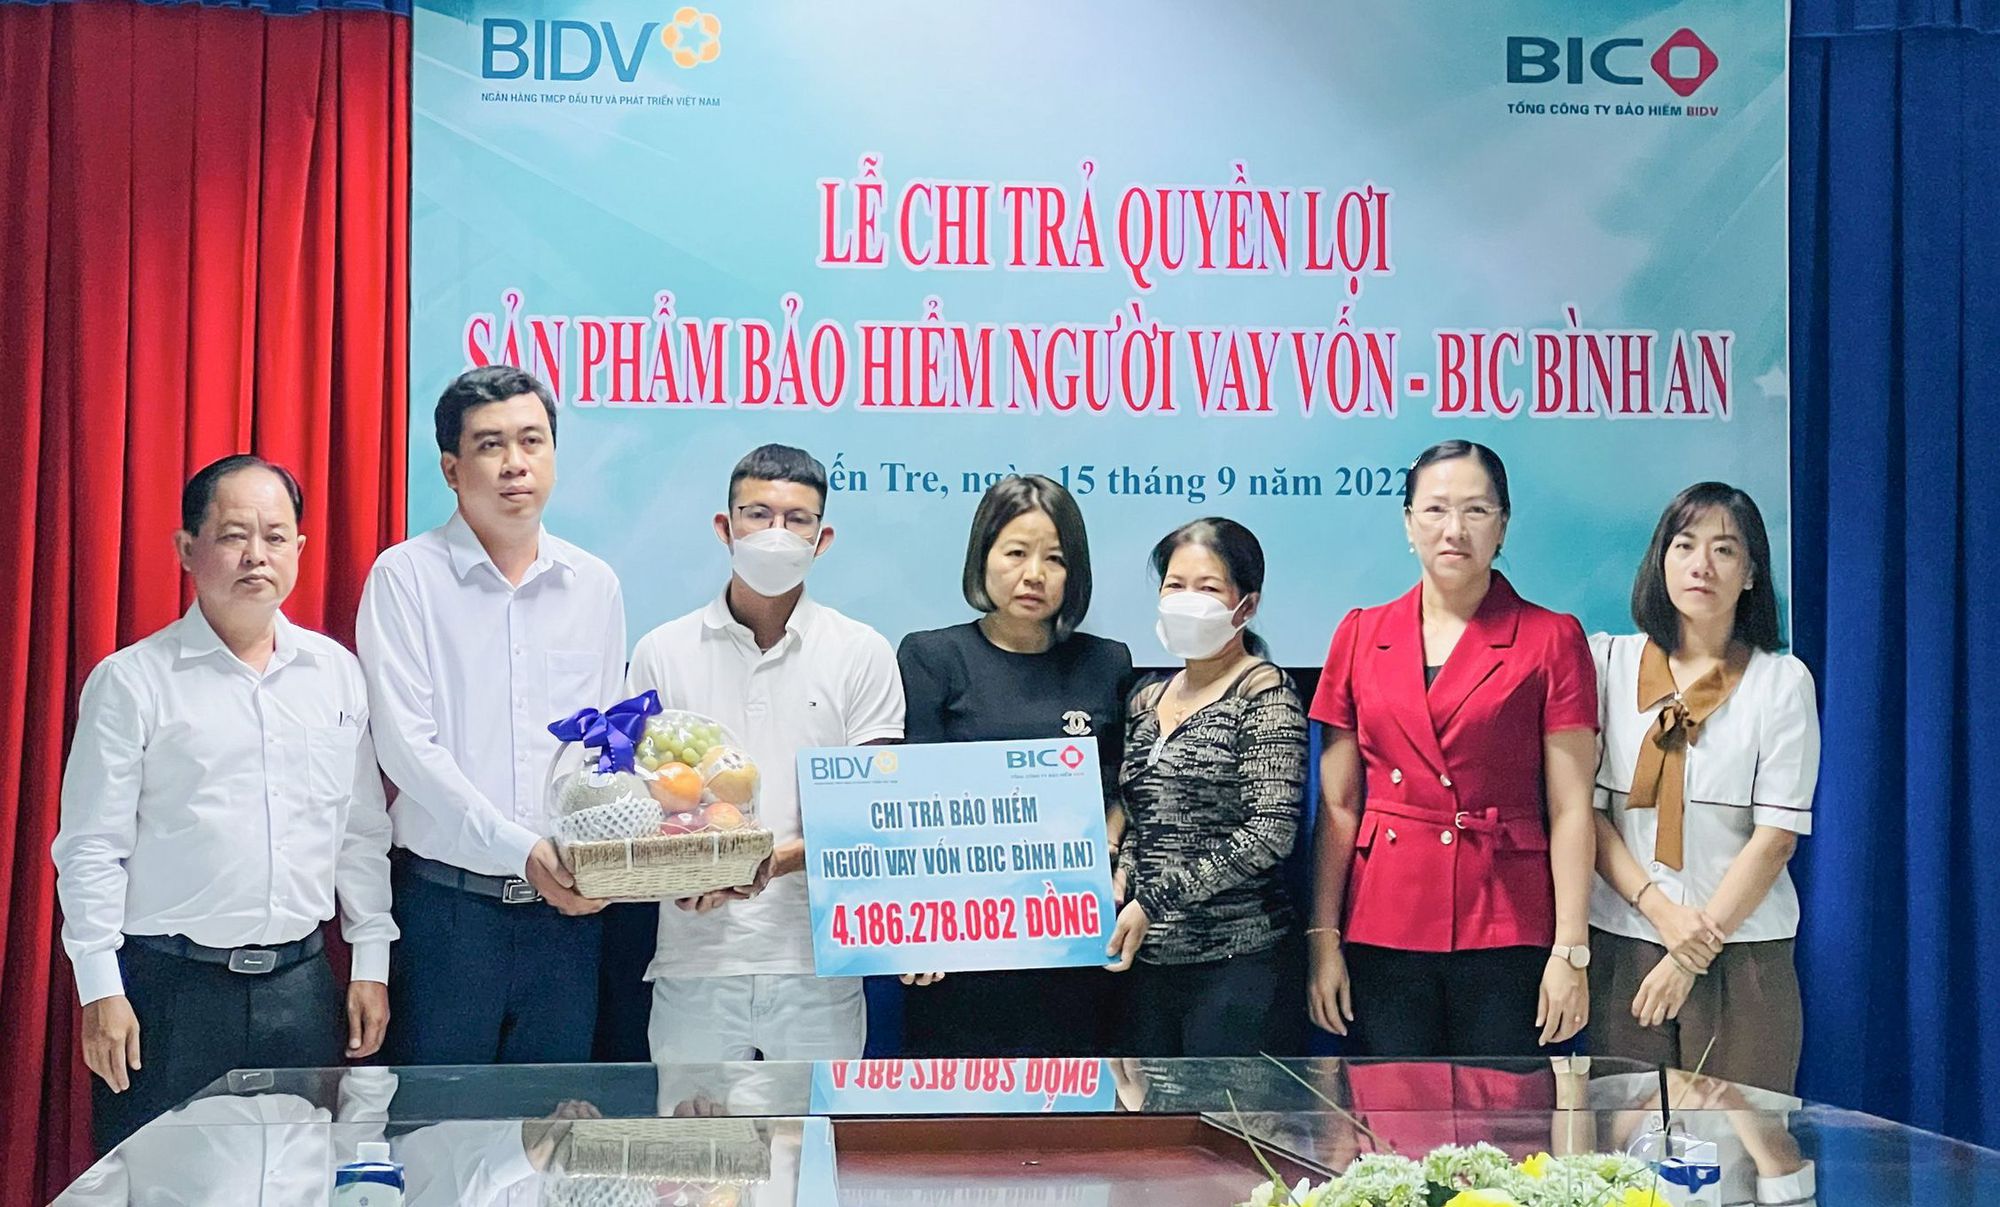 Bảo hiểm BIDV (BIC) chi trả hơn 4 tỷ đồng tiền bảo hiểm cho khách hàng tại Bến Tre - Ảnh 1.